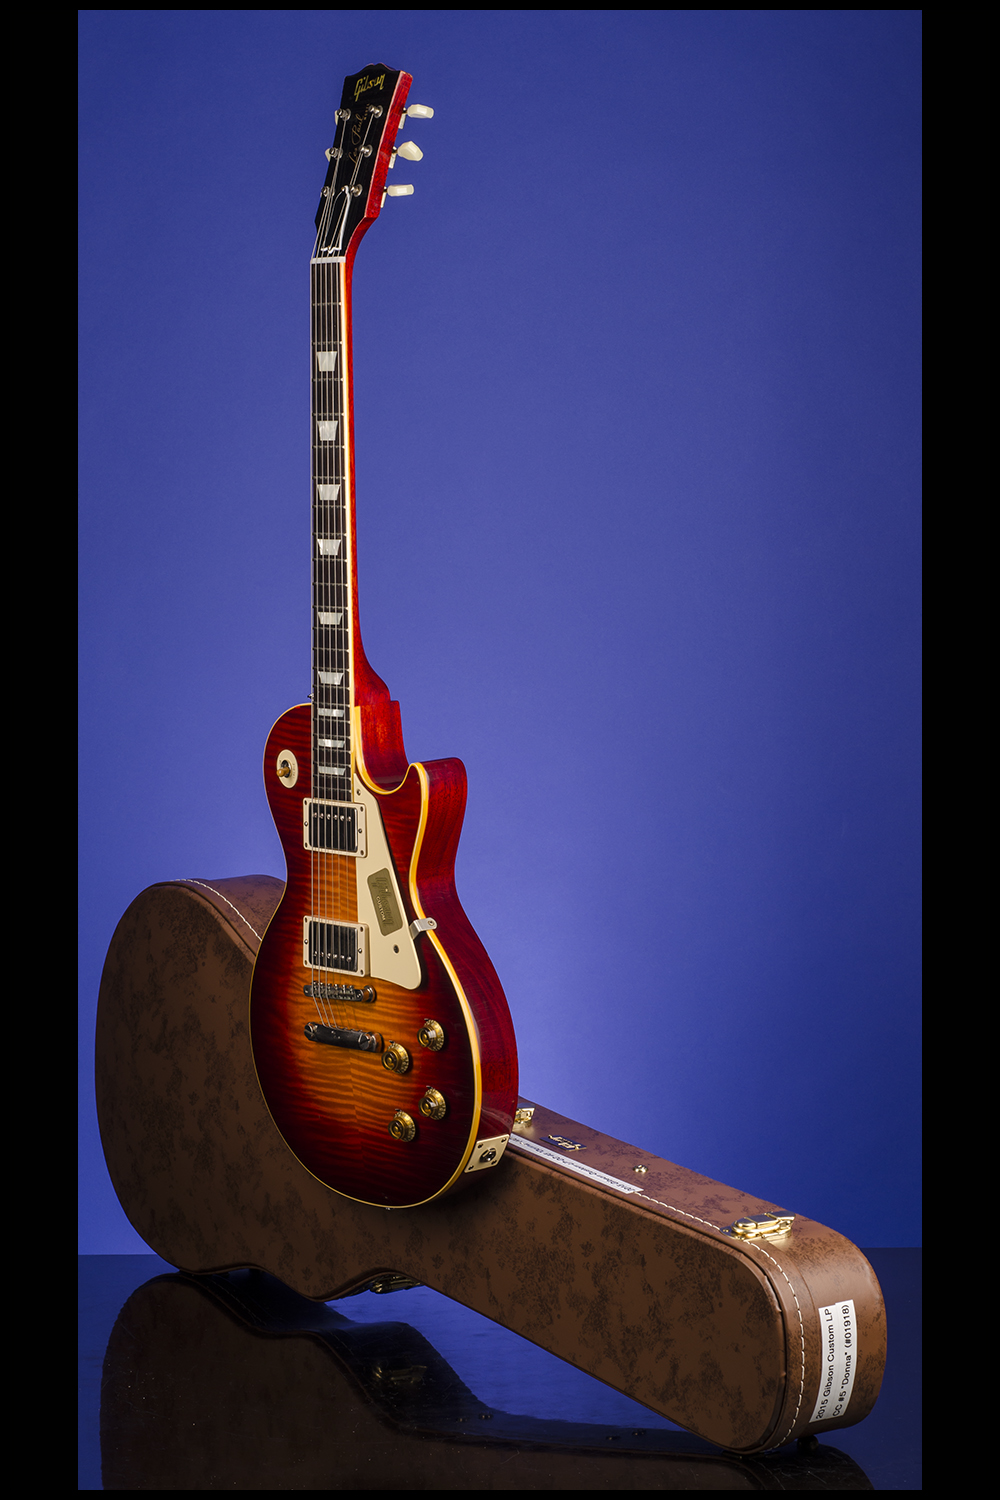 Les Paul Collectors Choice #5 Guitars